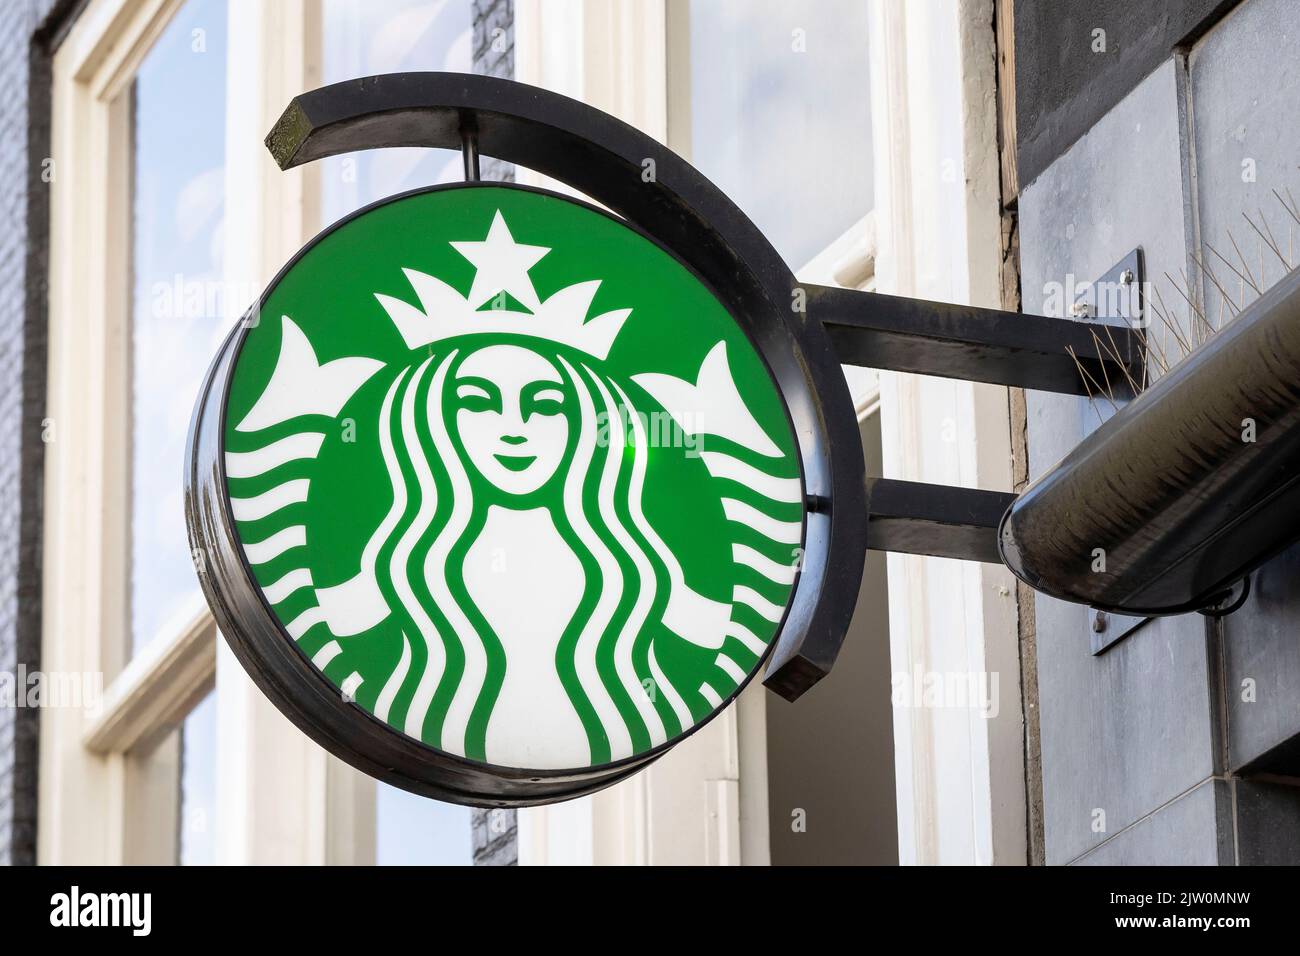 Un gros plan d'une enseigne Starbucks Coffee Shop à Amsterdam, Hollande. Banque D'Images